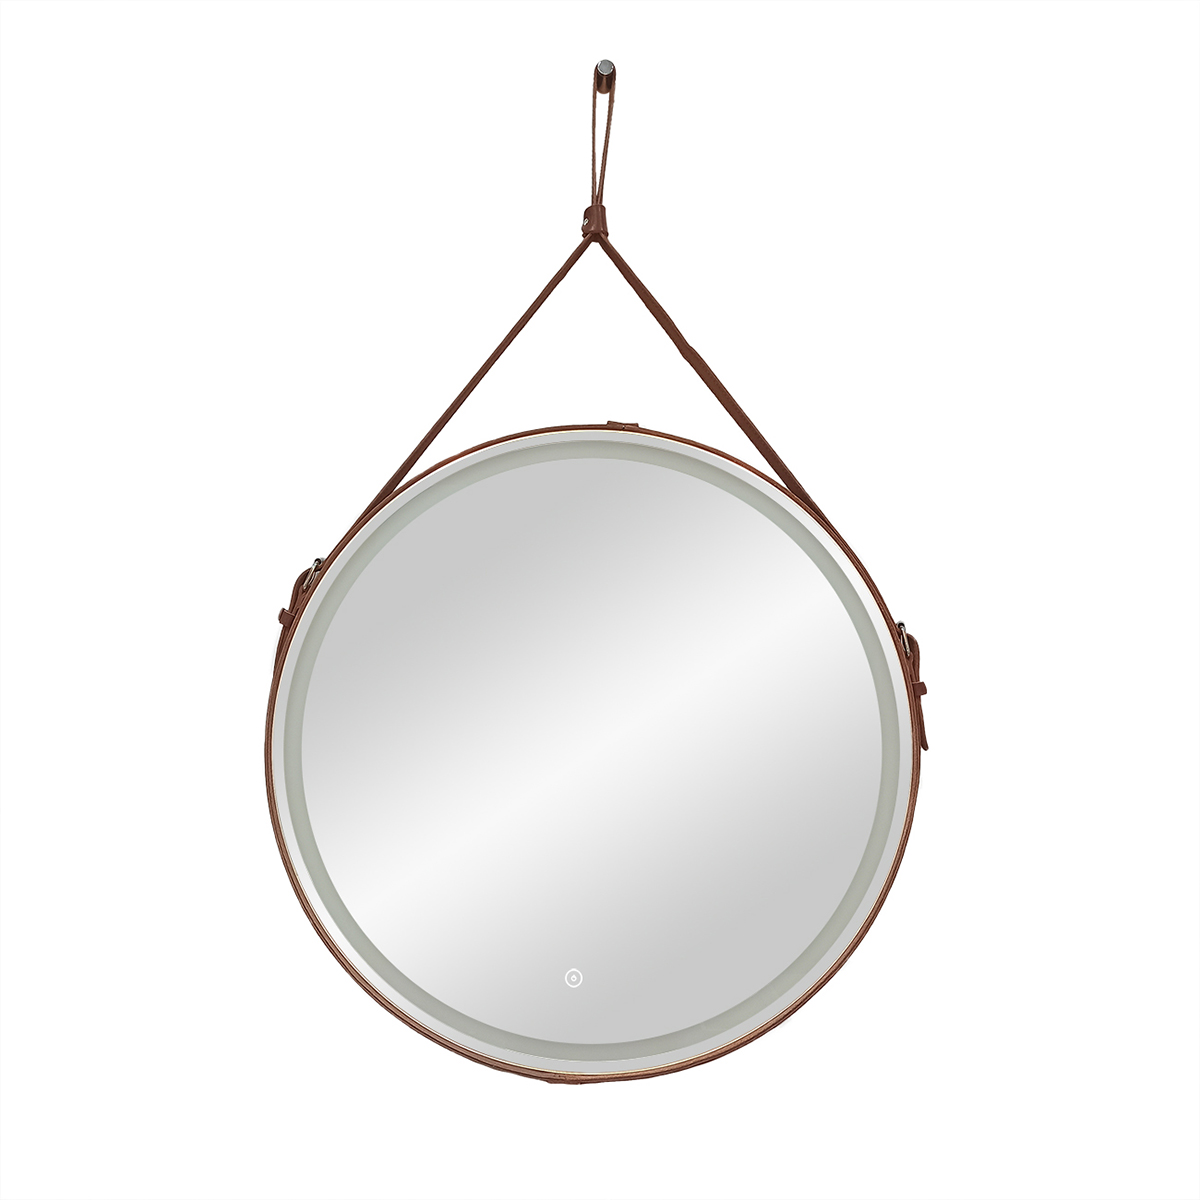 Зеркало Continent Millenium Brown D500 круглое, с LED подсветкой, кожаный ремень, коричневый